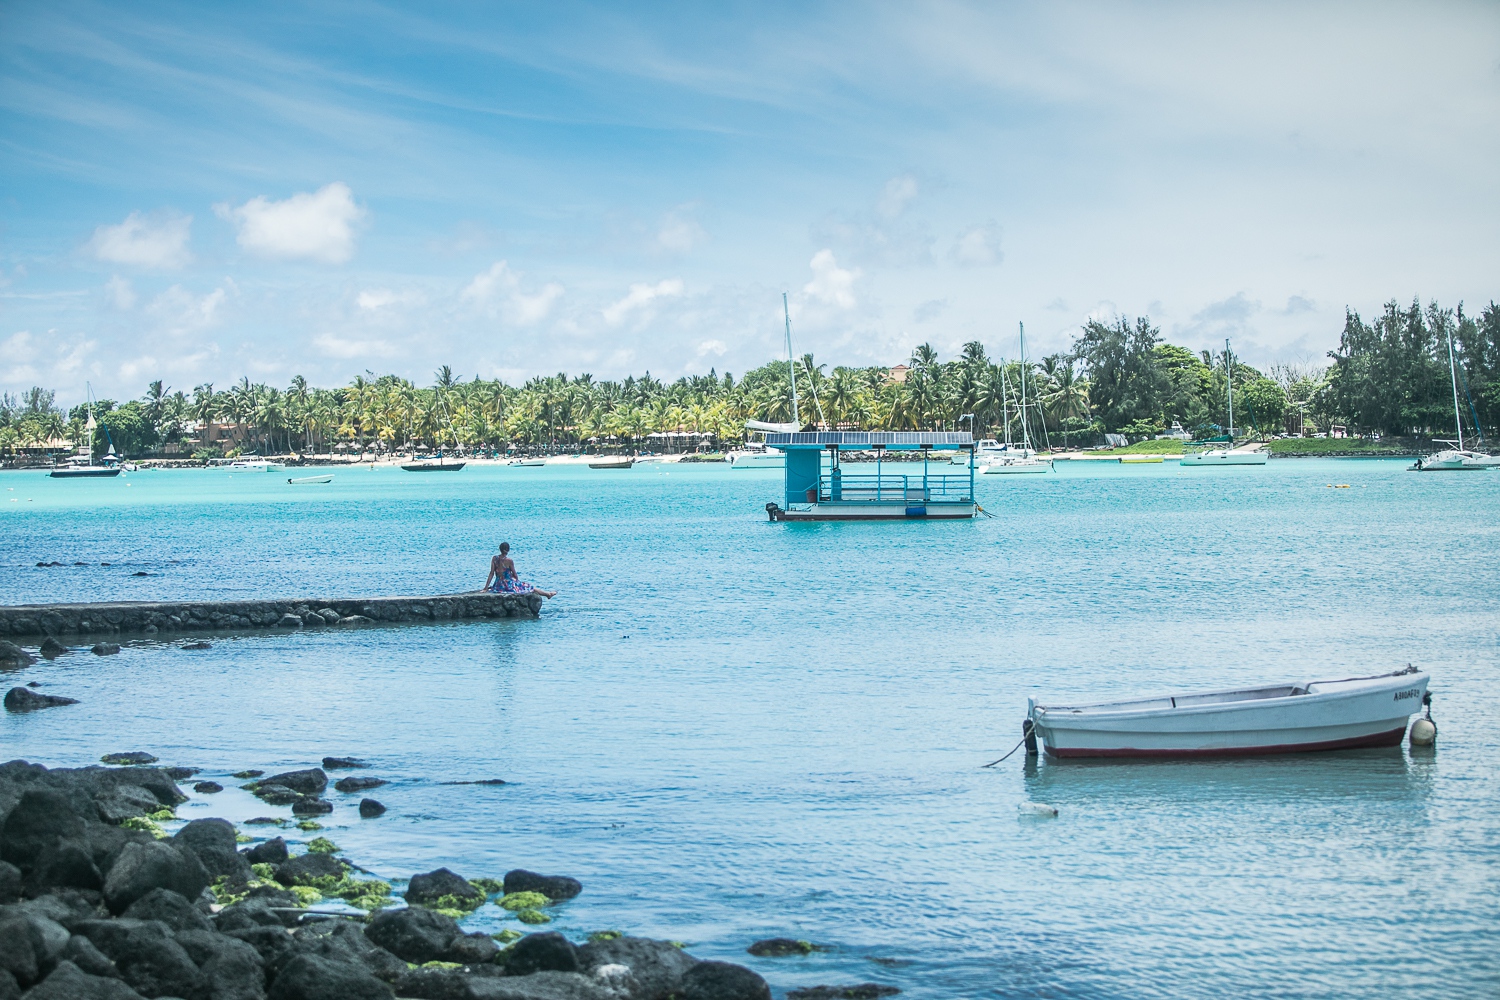 Les 10 plus belles plages pour se baigner à l’île Maurice